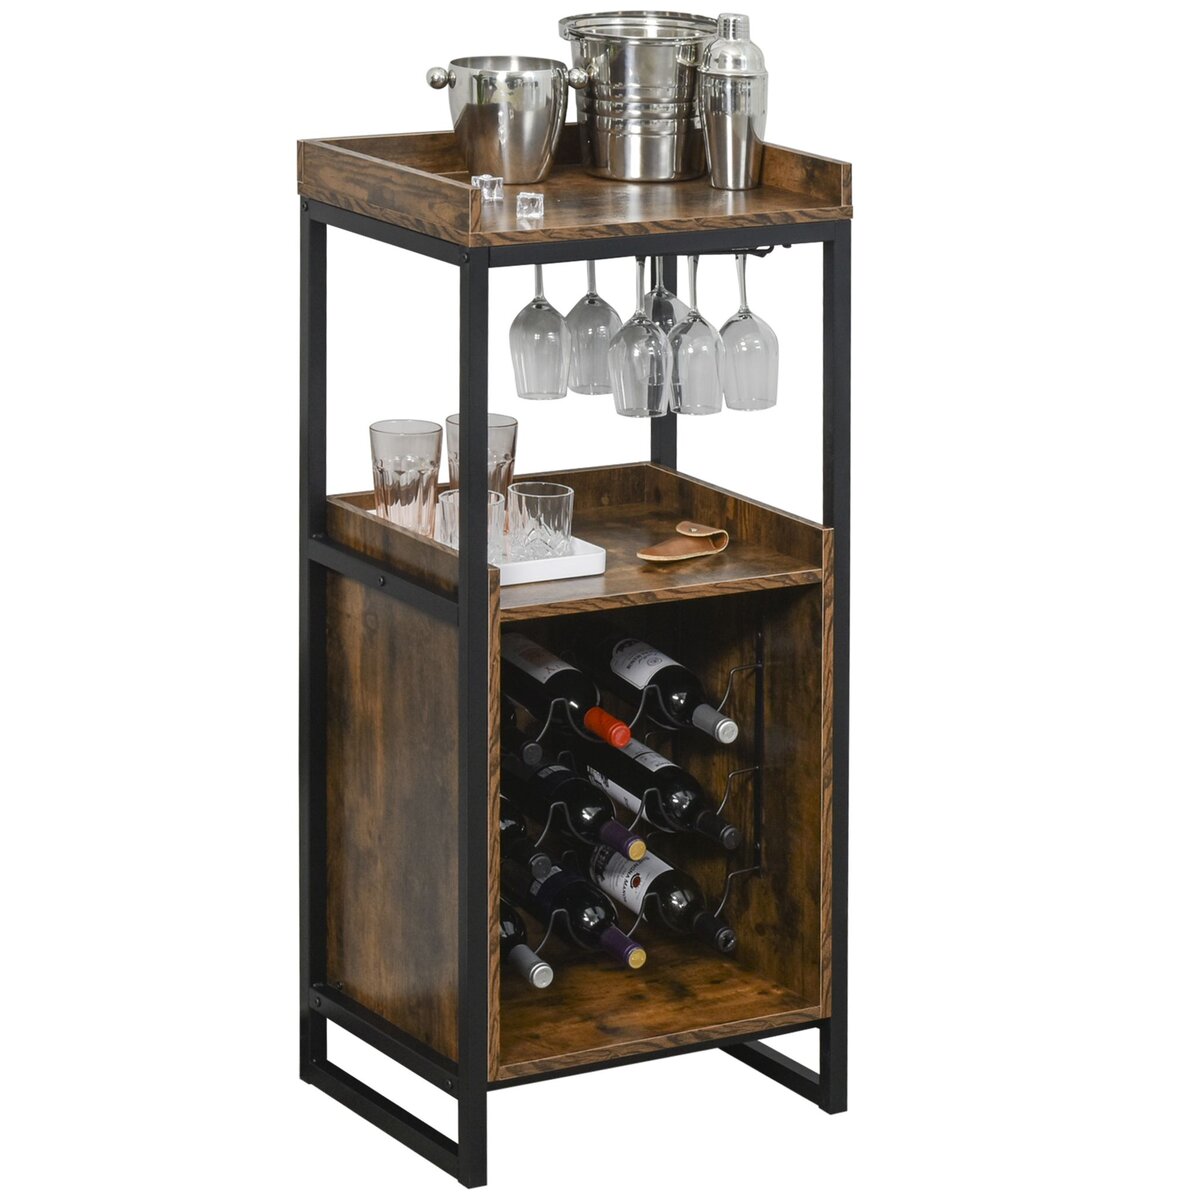 HOMCOM Casier à vin design industriel étagère à bouteilles 9 bouteilles support verres à vin intégré métal noir aspect vieux bois veinage